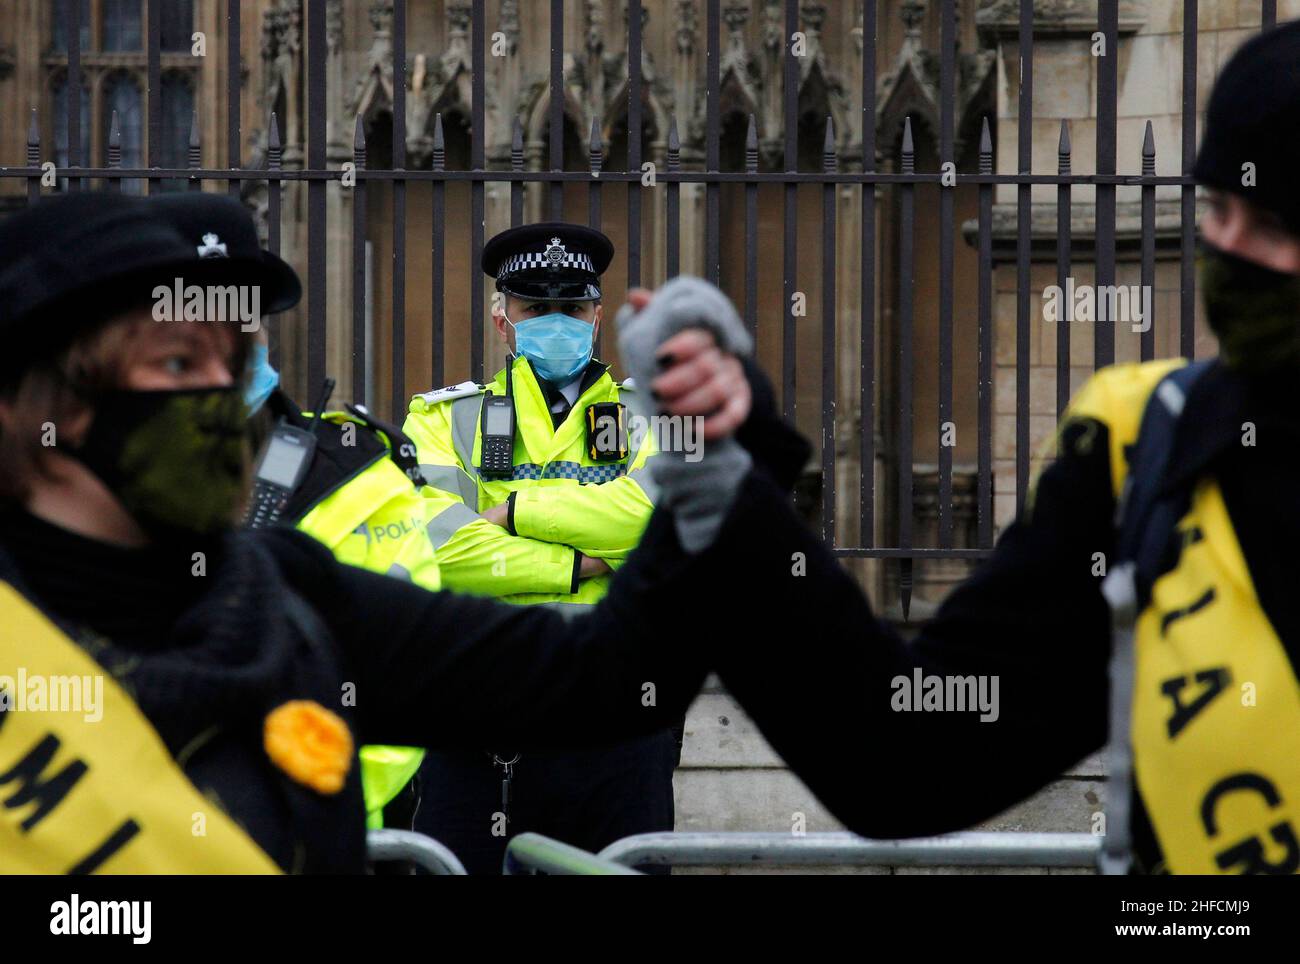 Un gruppo di donne protestano fuori dal parlamento come parte del movimento Kill the Bill. La polizia che sorvegliano il parlamento guarda oltre i manifestanti. Londra, gennaio 15th 2021. Anna Hatfield/Pathos Foto Stock